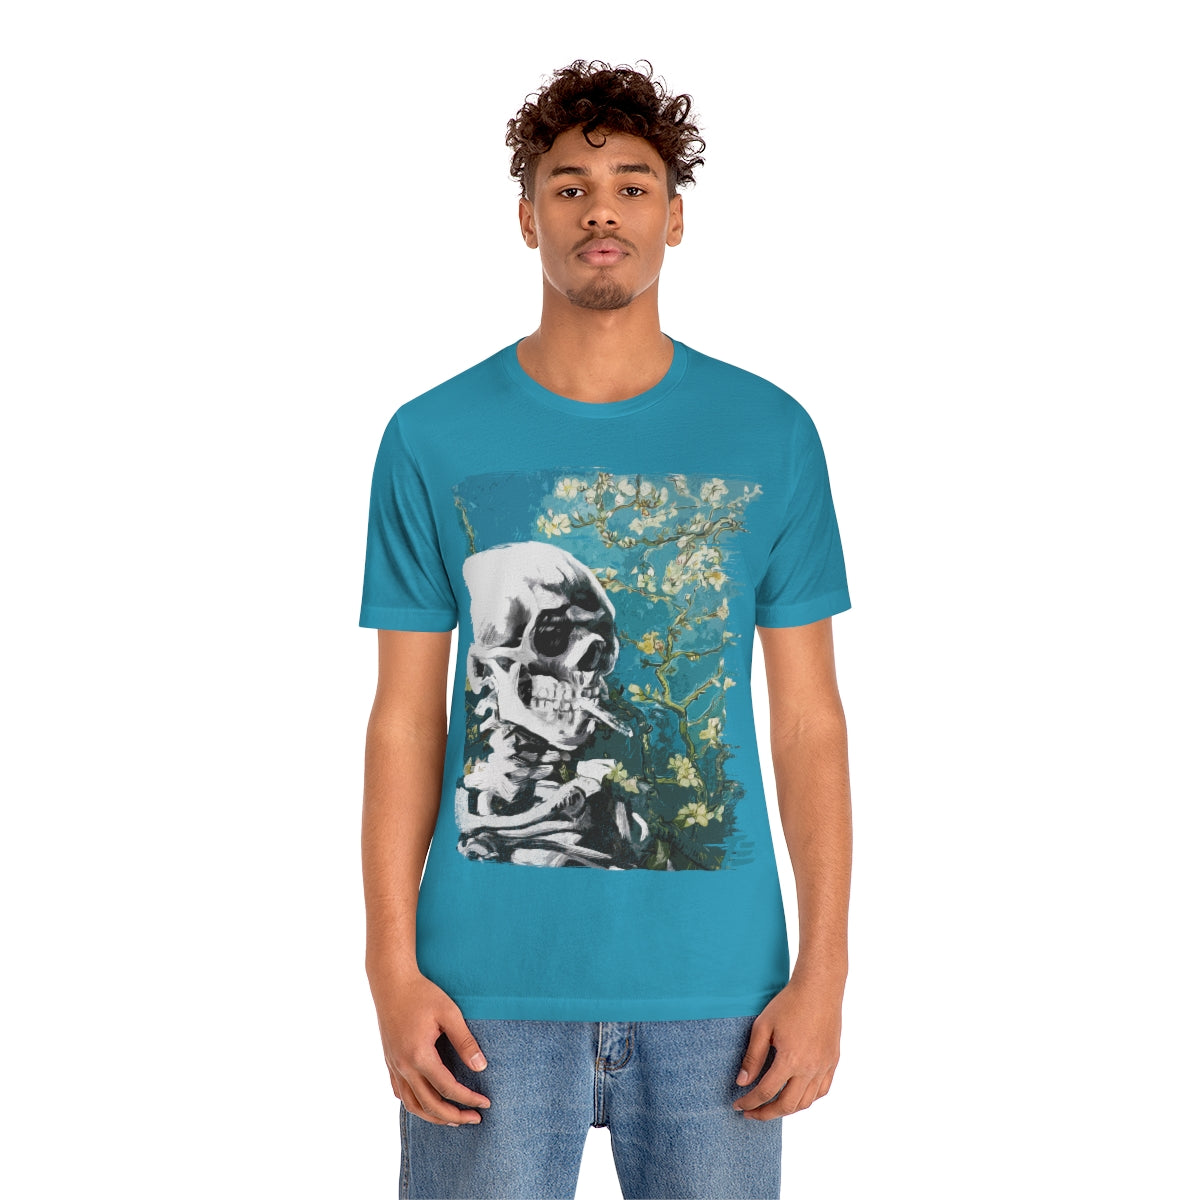 Skull With Burning Cigarette on cherry Blossom - Van Gogh Tribute | Art Freak T-shirt